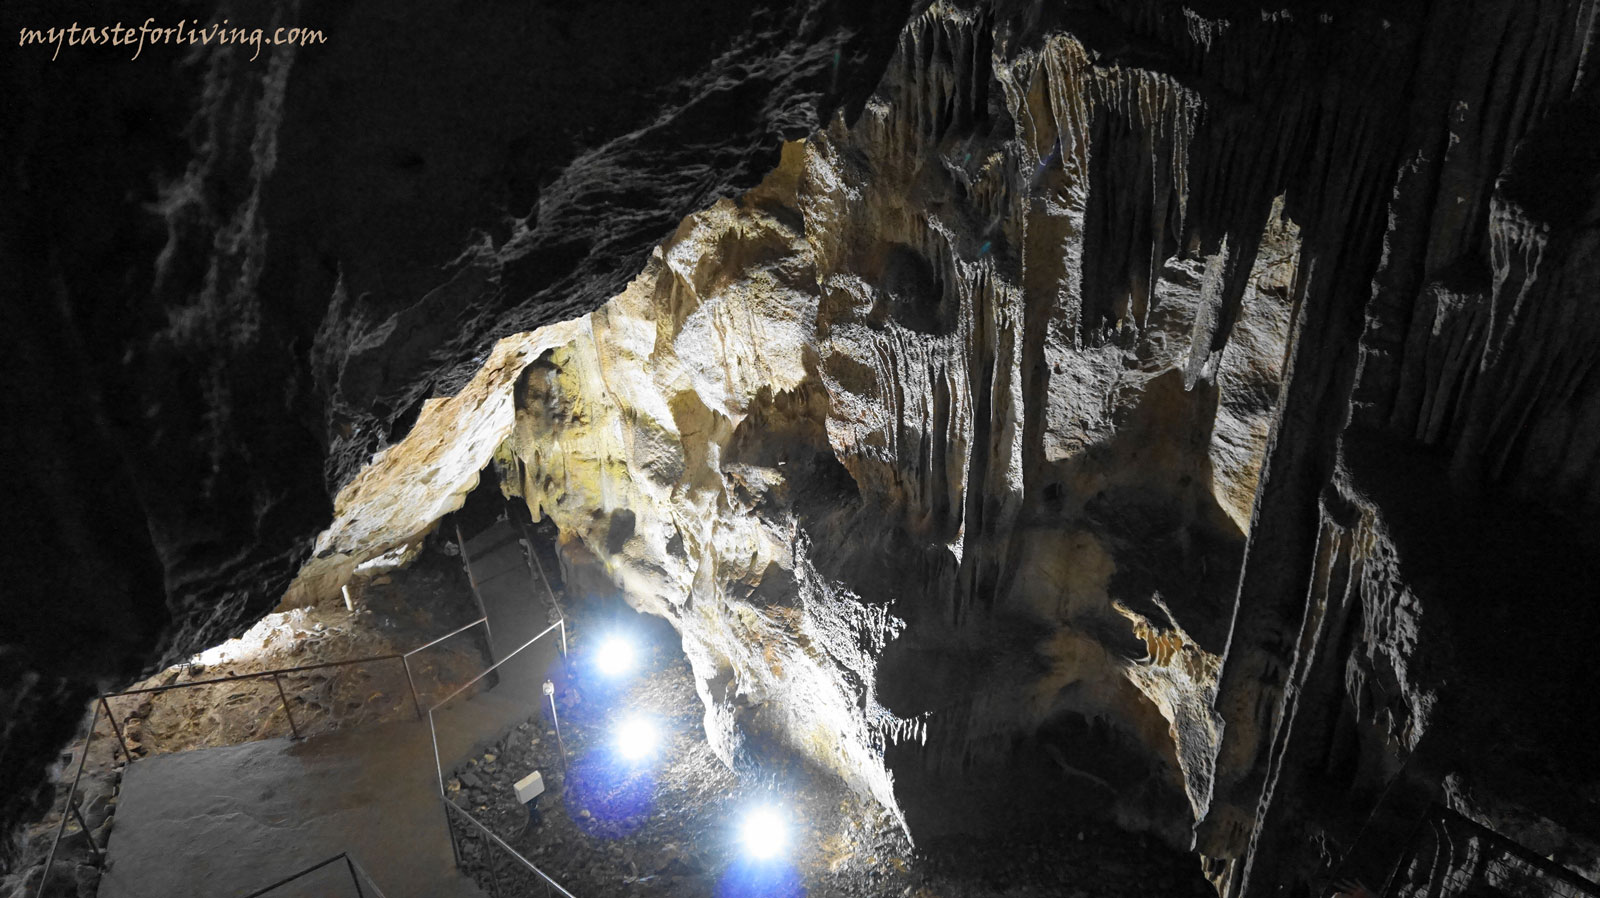 Пещера „Добростански бисер“ е пропастна пещера в Родопите, намираща се в резерват „Червената стена“ в община Асеновград. Известна е още като „Ахметьова дупка“.